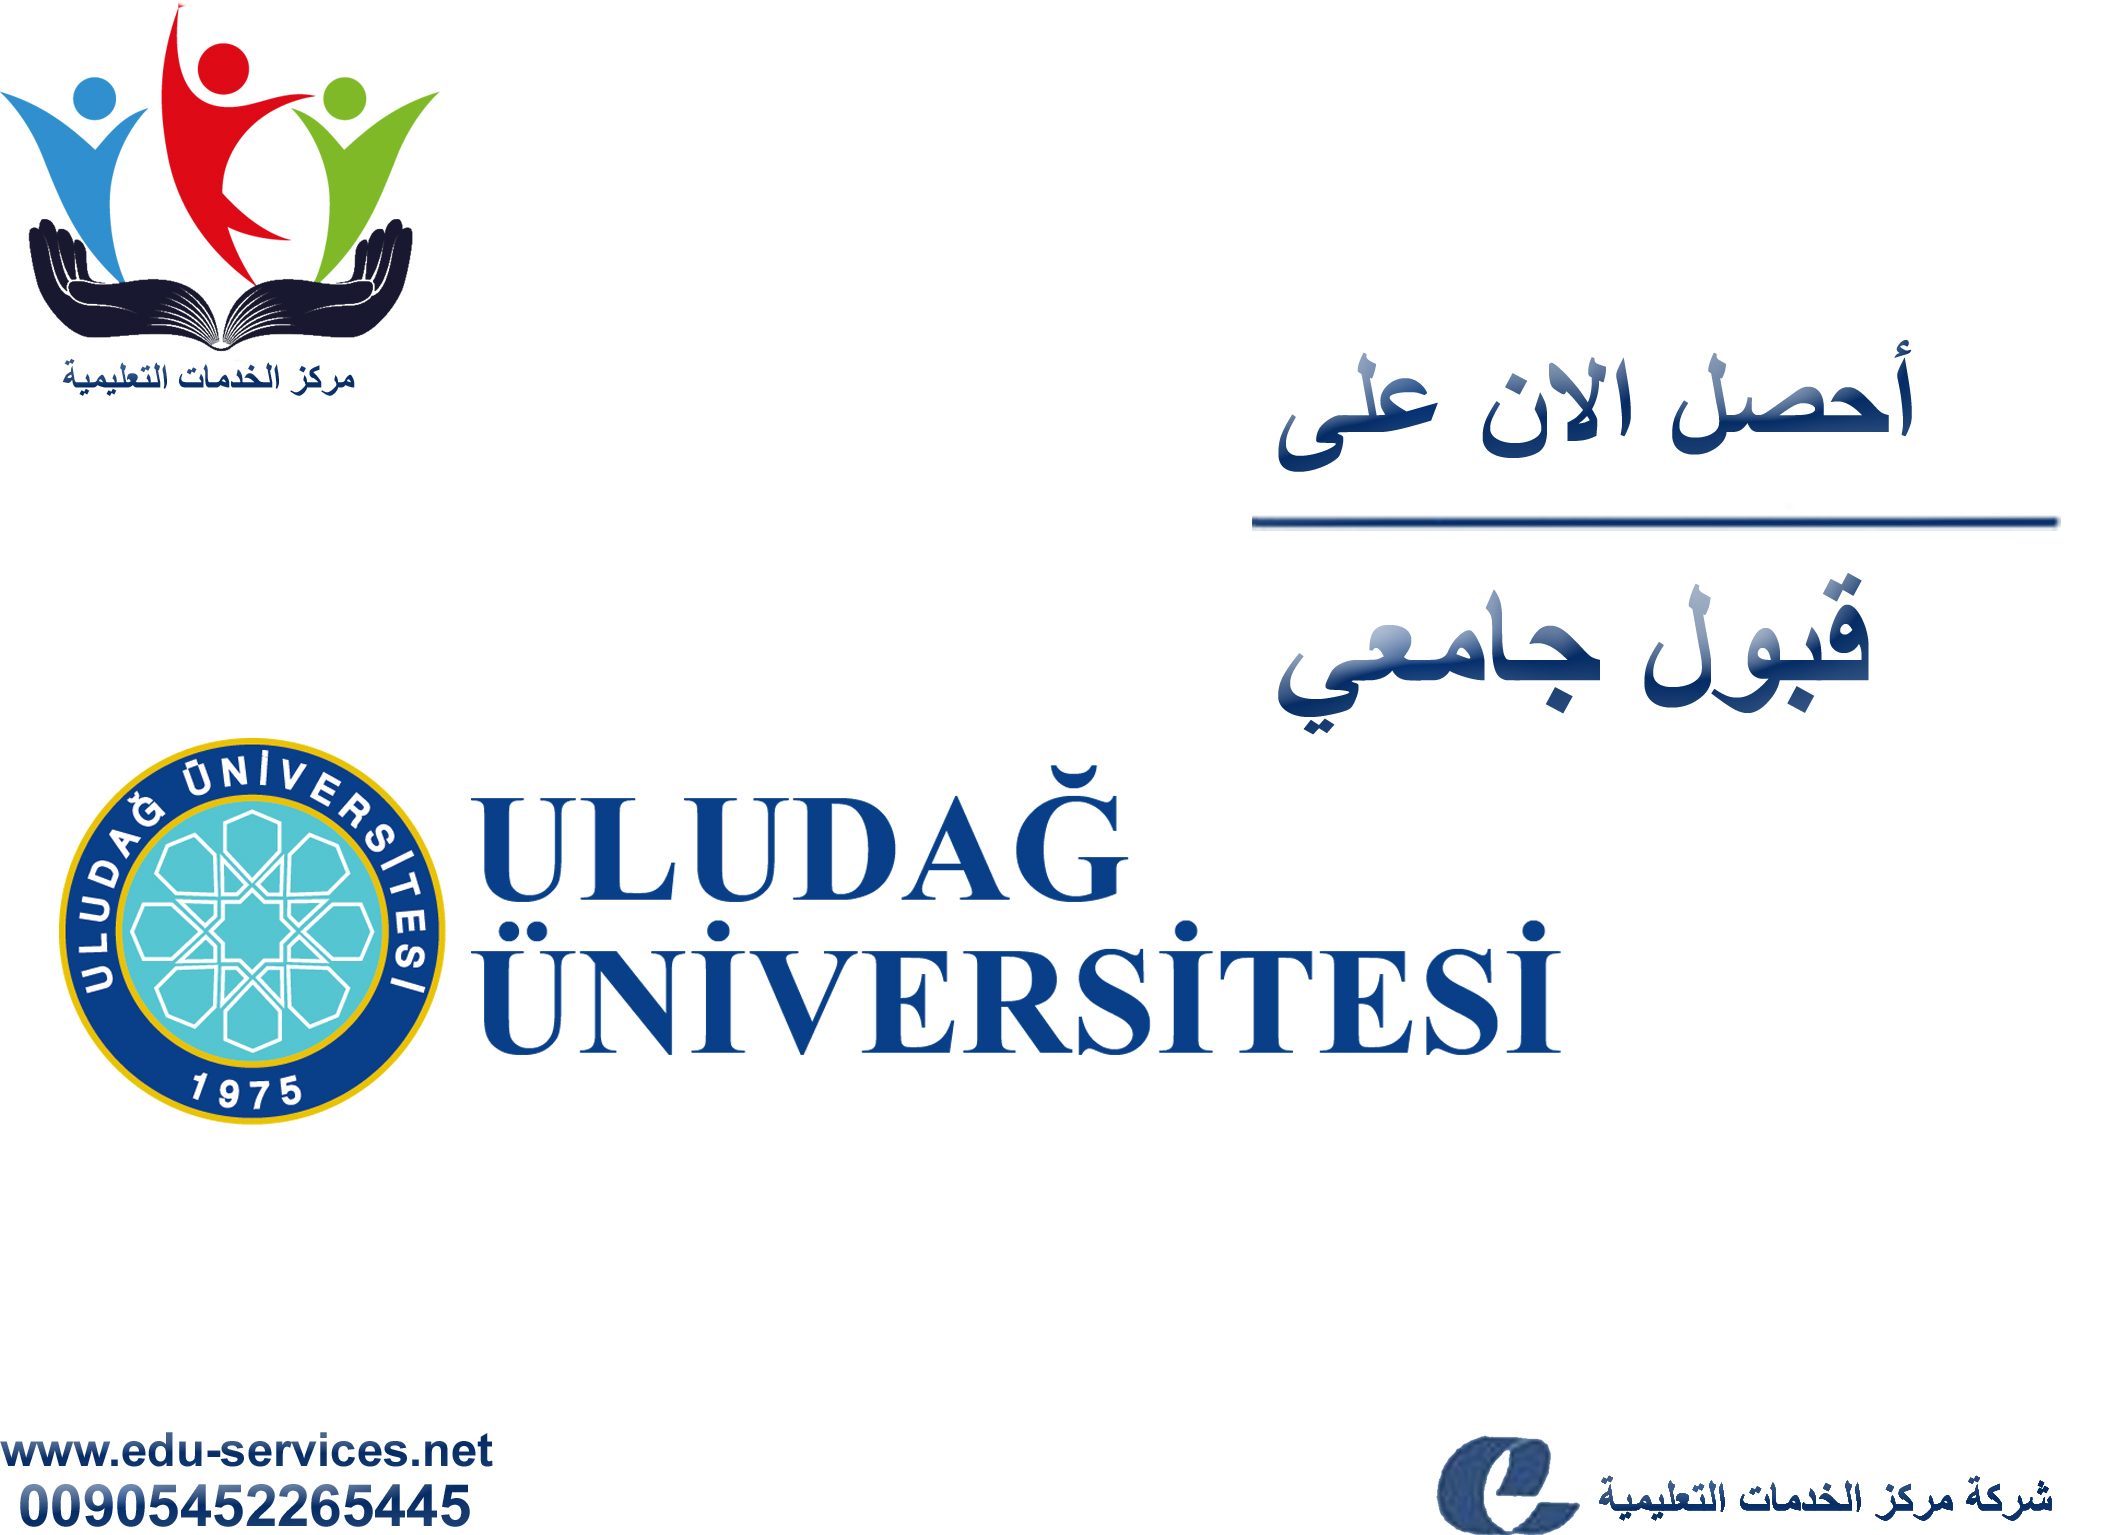 افتتاح التسجيل في جامعة اولوداغ للعام 2018-2019